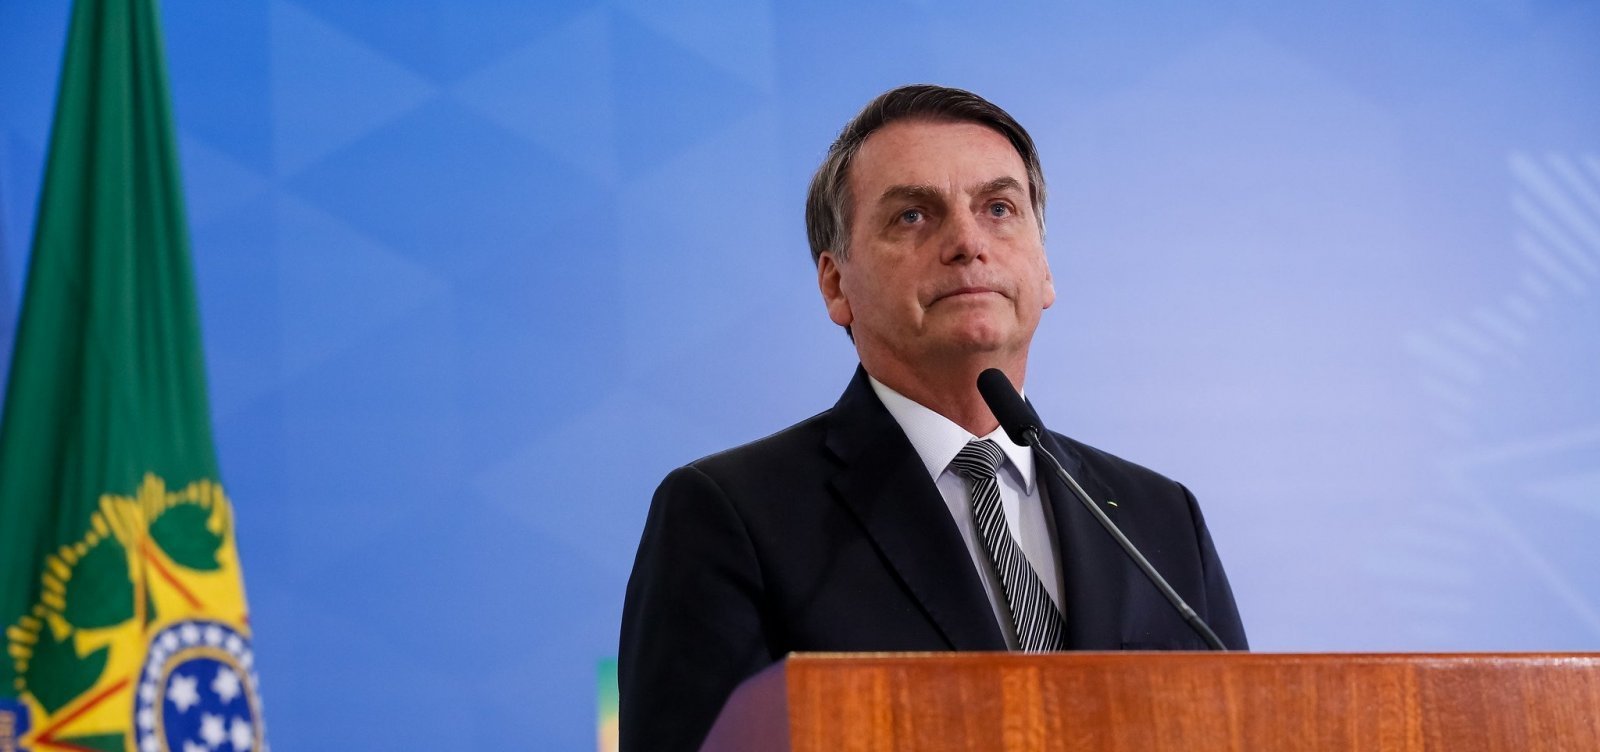 "Nunca tive intenção de agredir quaisquer dos Poderes", diz Bolsonaro em Declaração à Nação